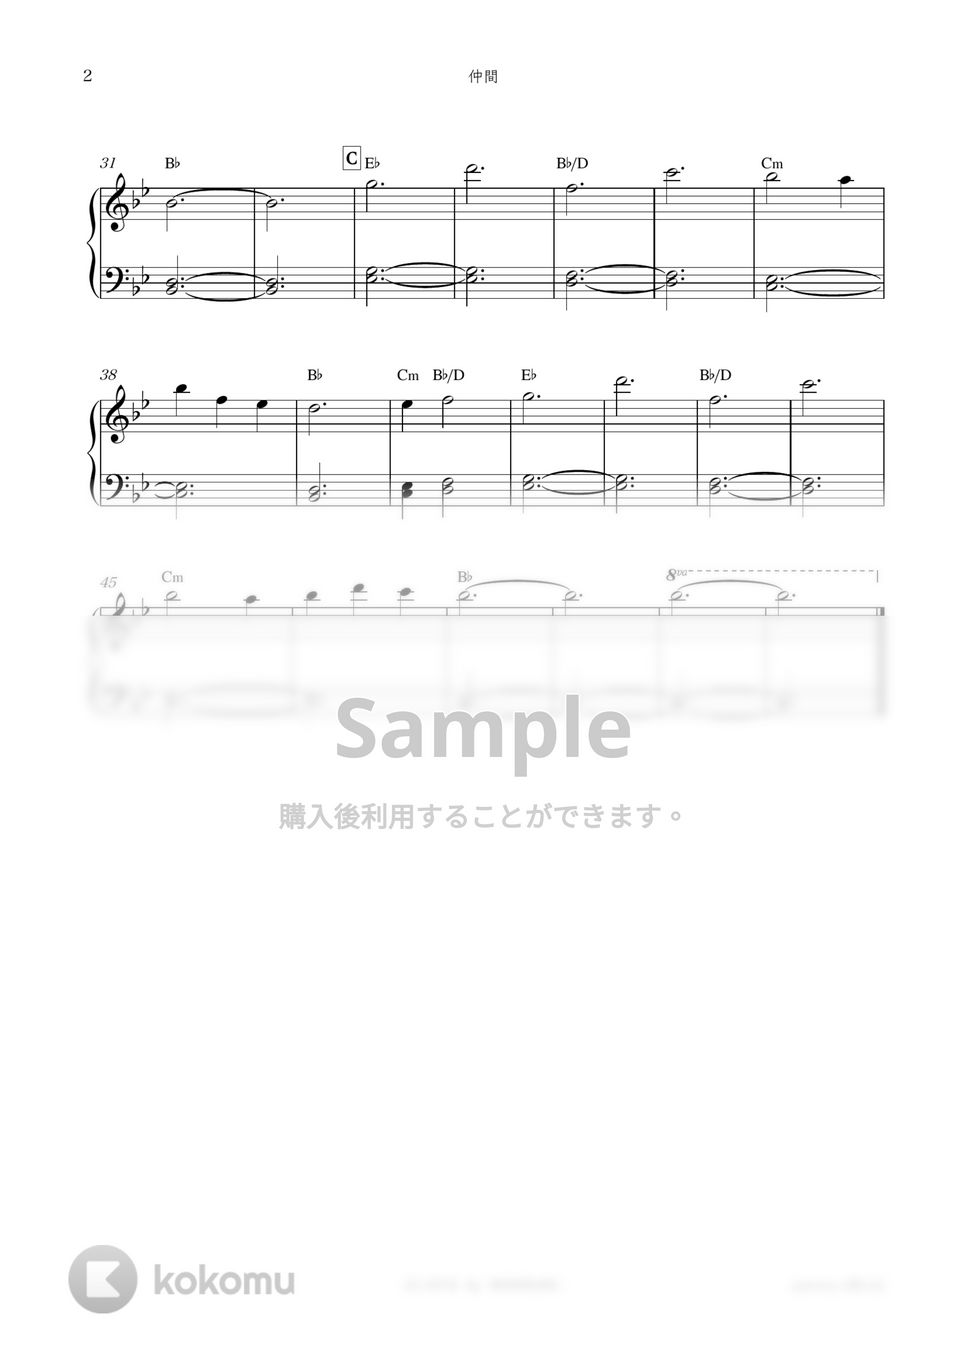 ドラマ『中学聖日記』OST - 仲間 by sammy